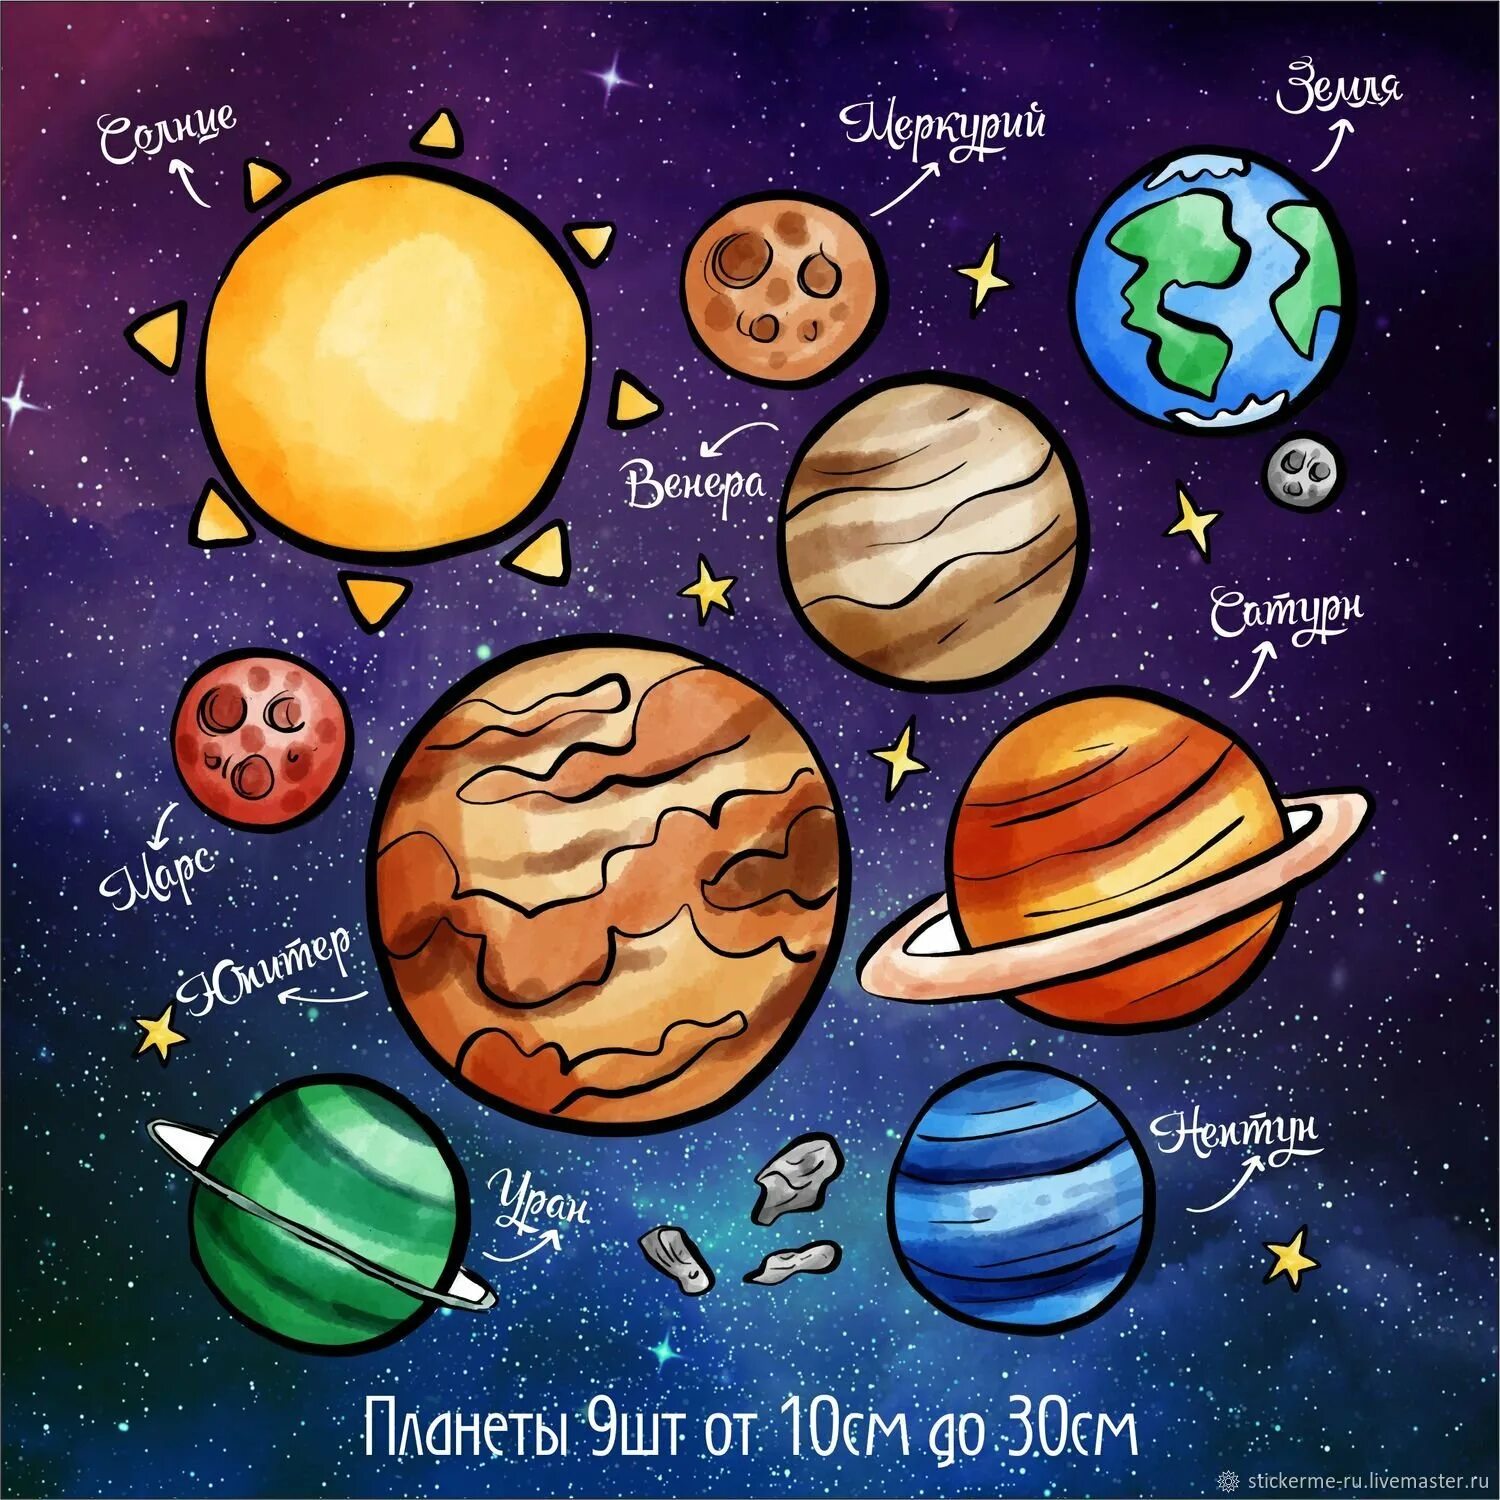 Распечатать планеты солнечной системы по отдельности. Планеты солнечной системы для детей. Космос планеты для детей. Рисунки планет. Название планет для детей.